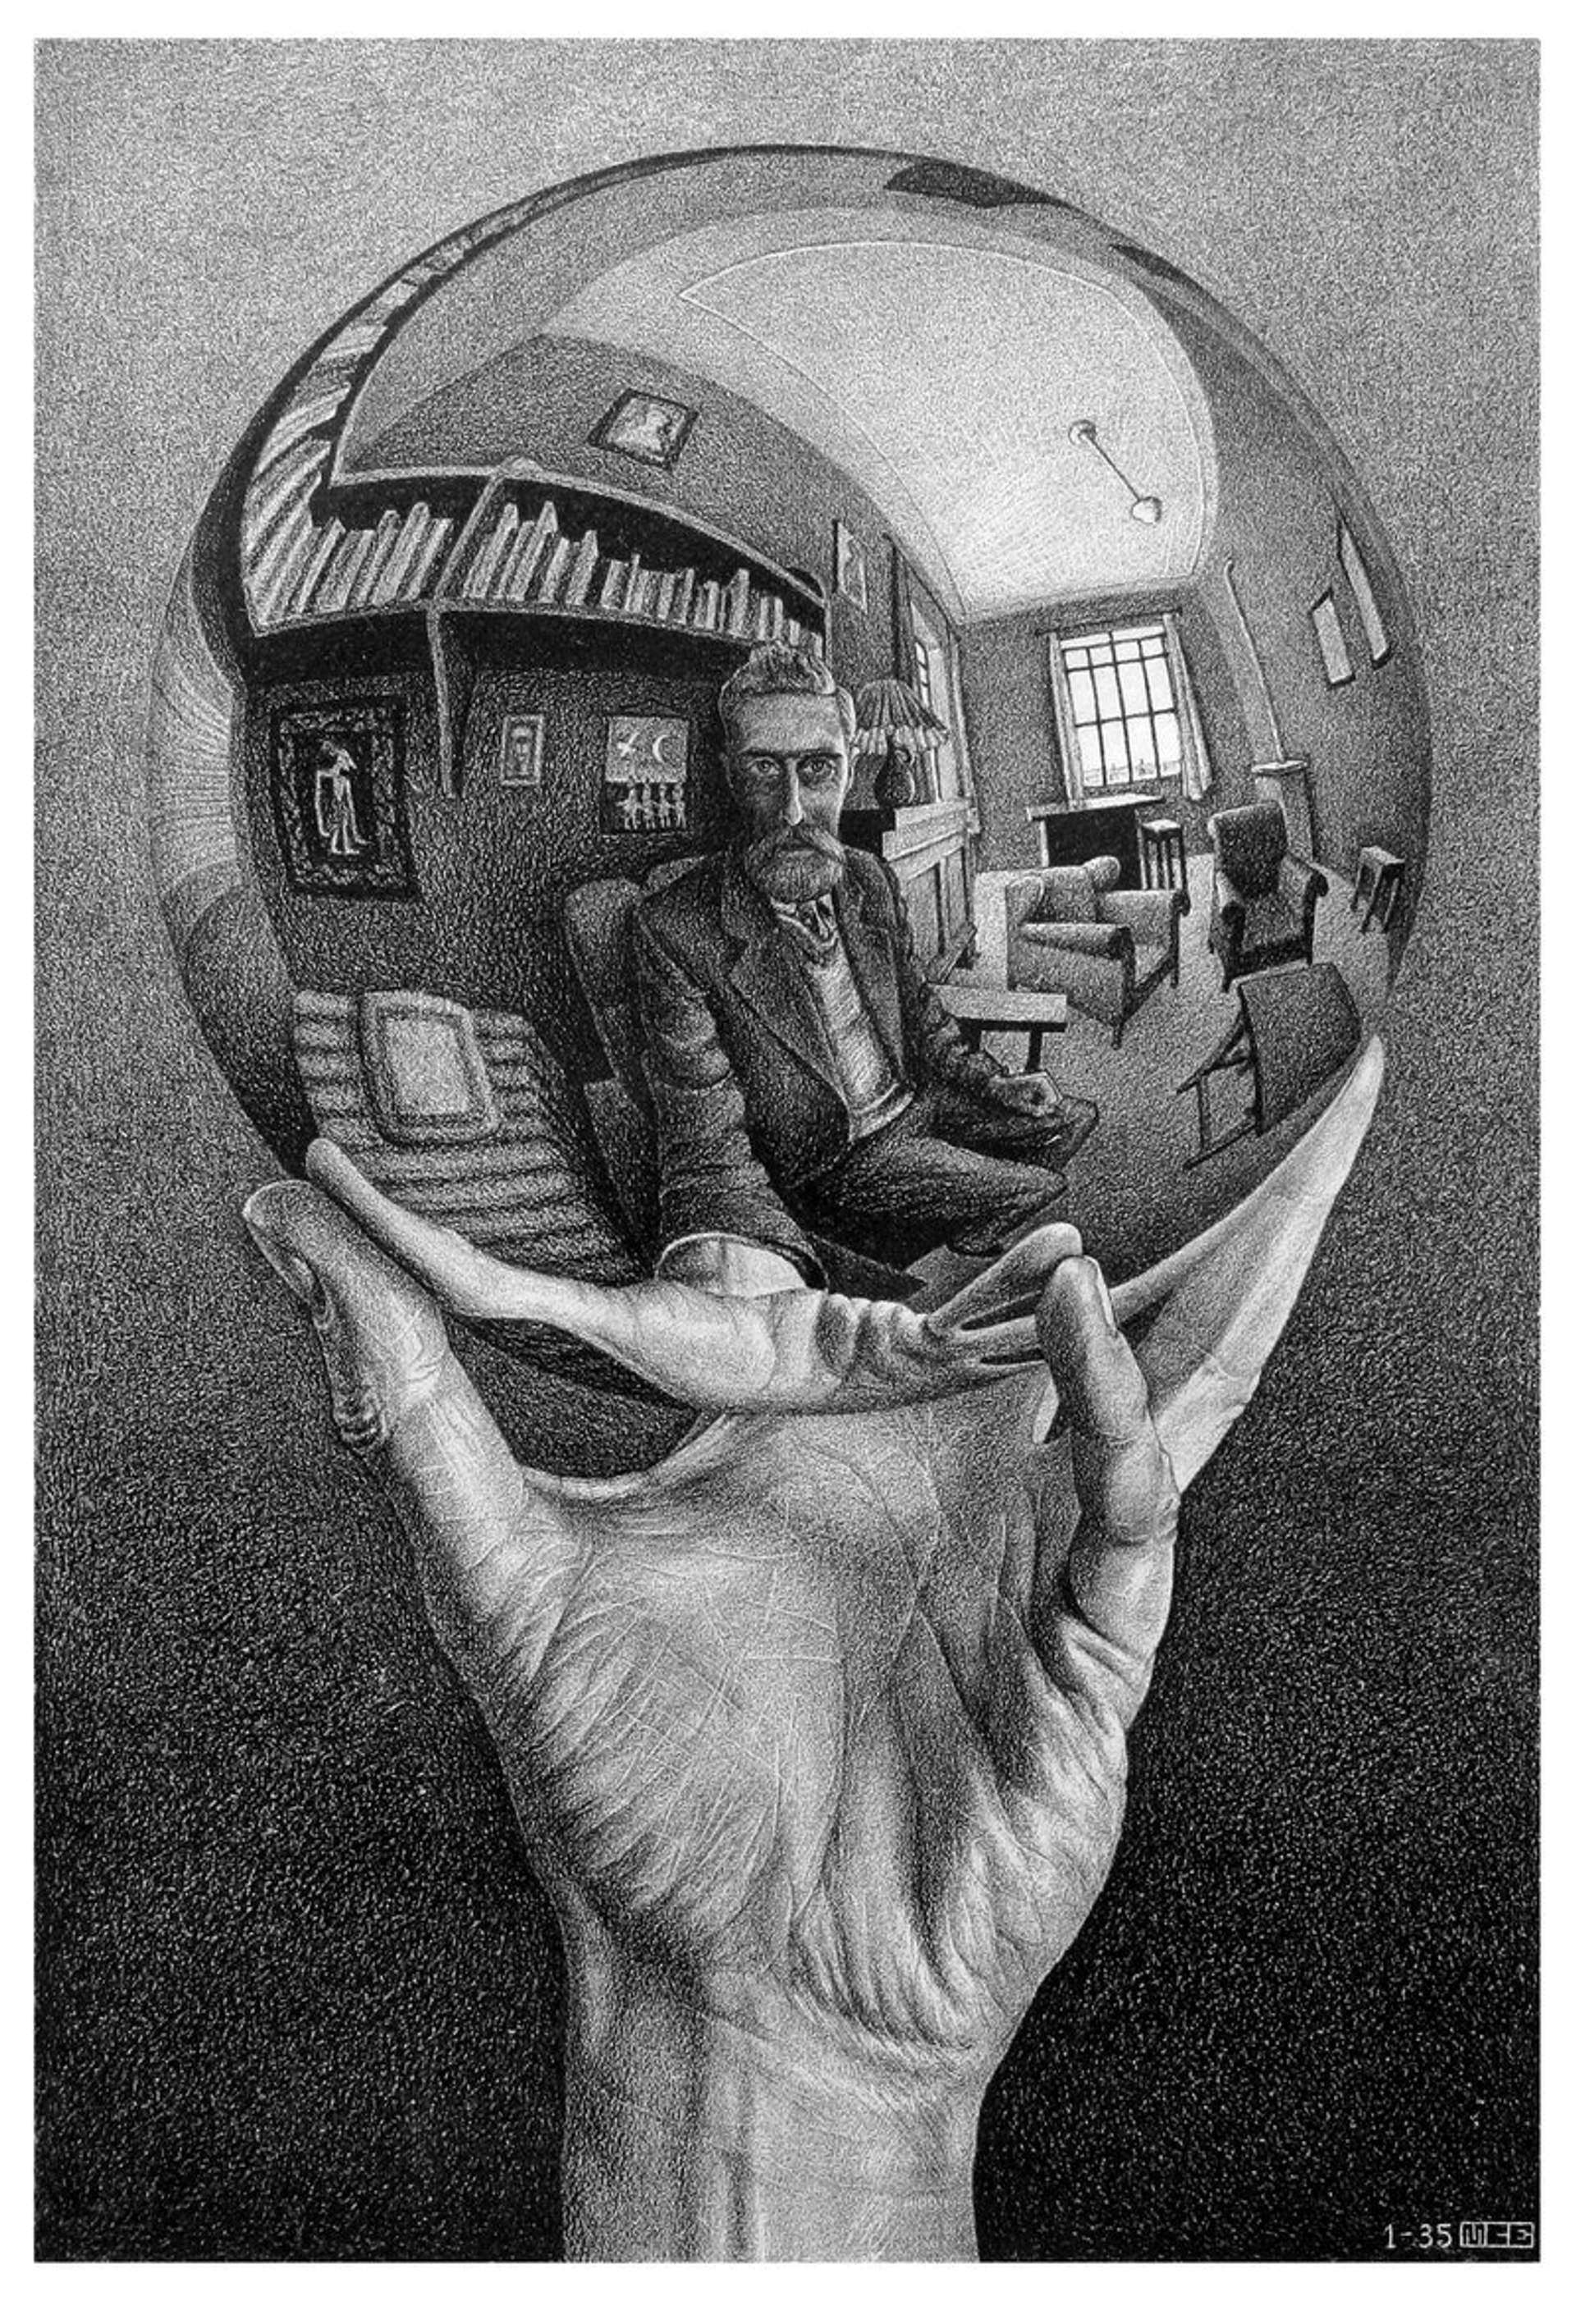 M.C. Escher's Most Famous Artworks